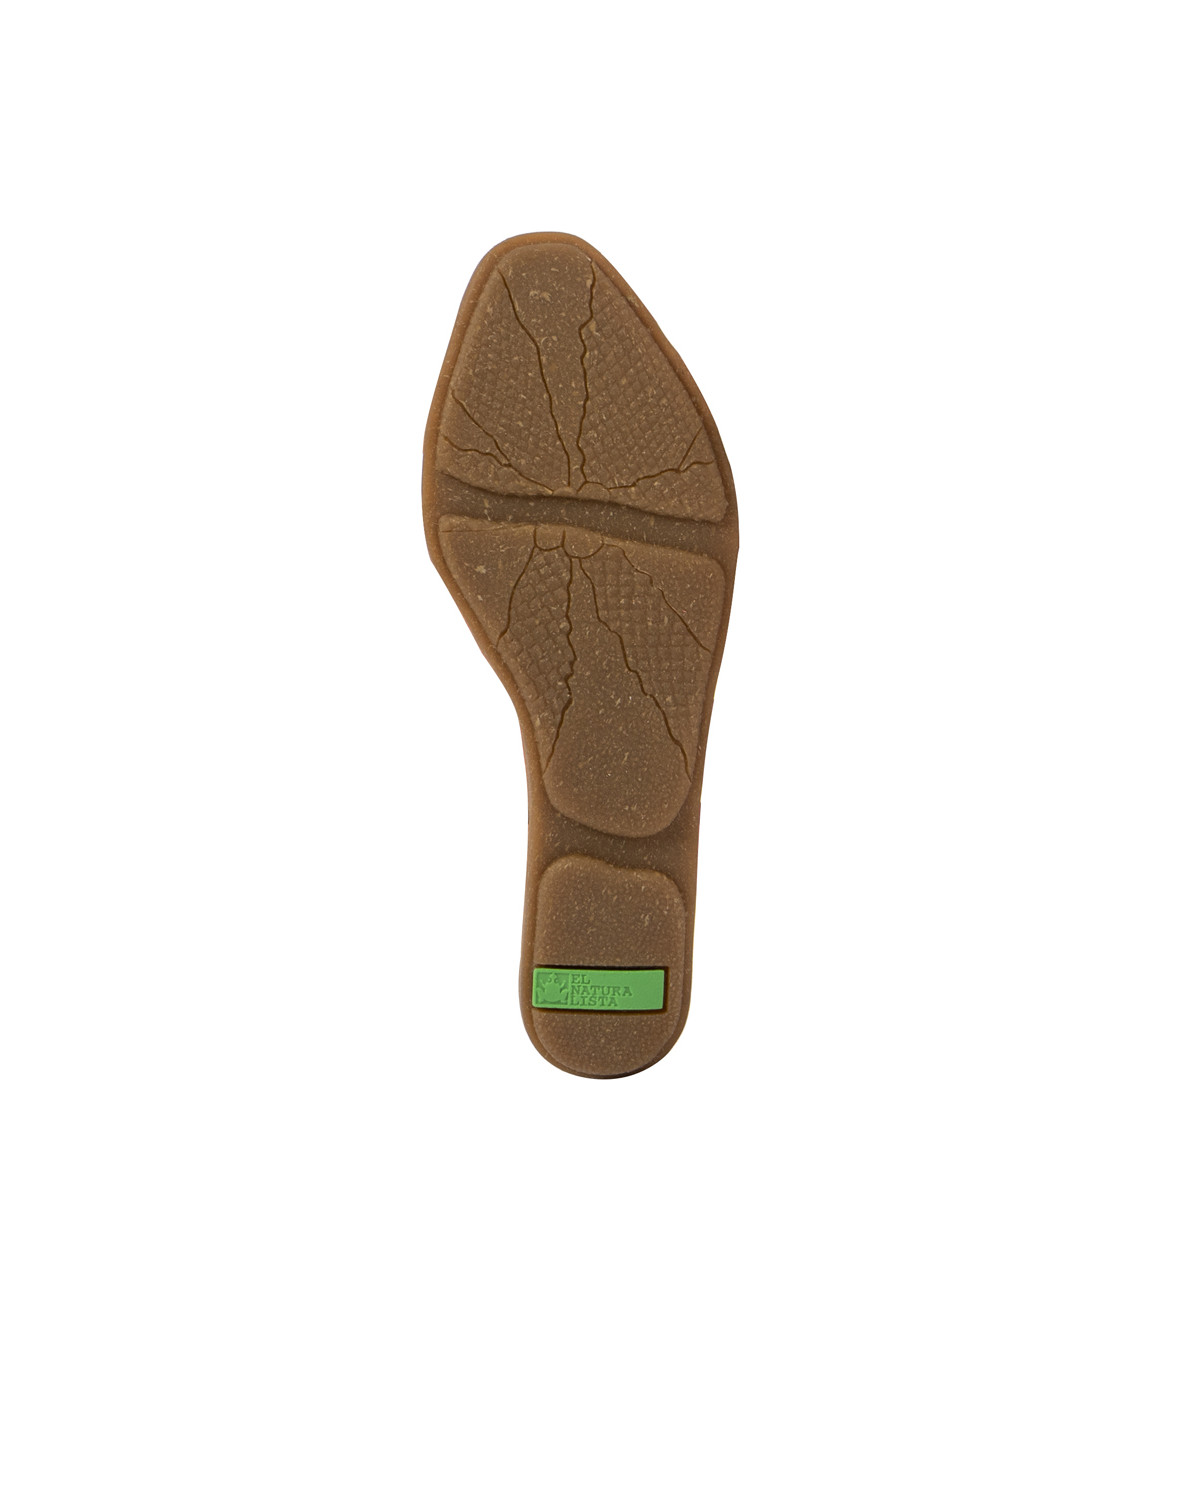 Sandales confortables plates type babies ouvertes - Marron - El naturalista